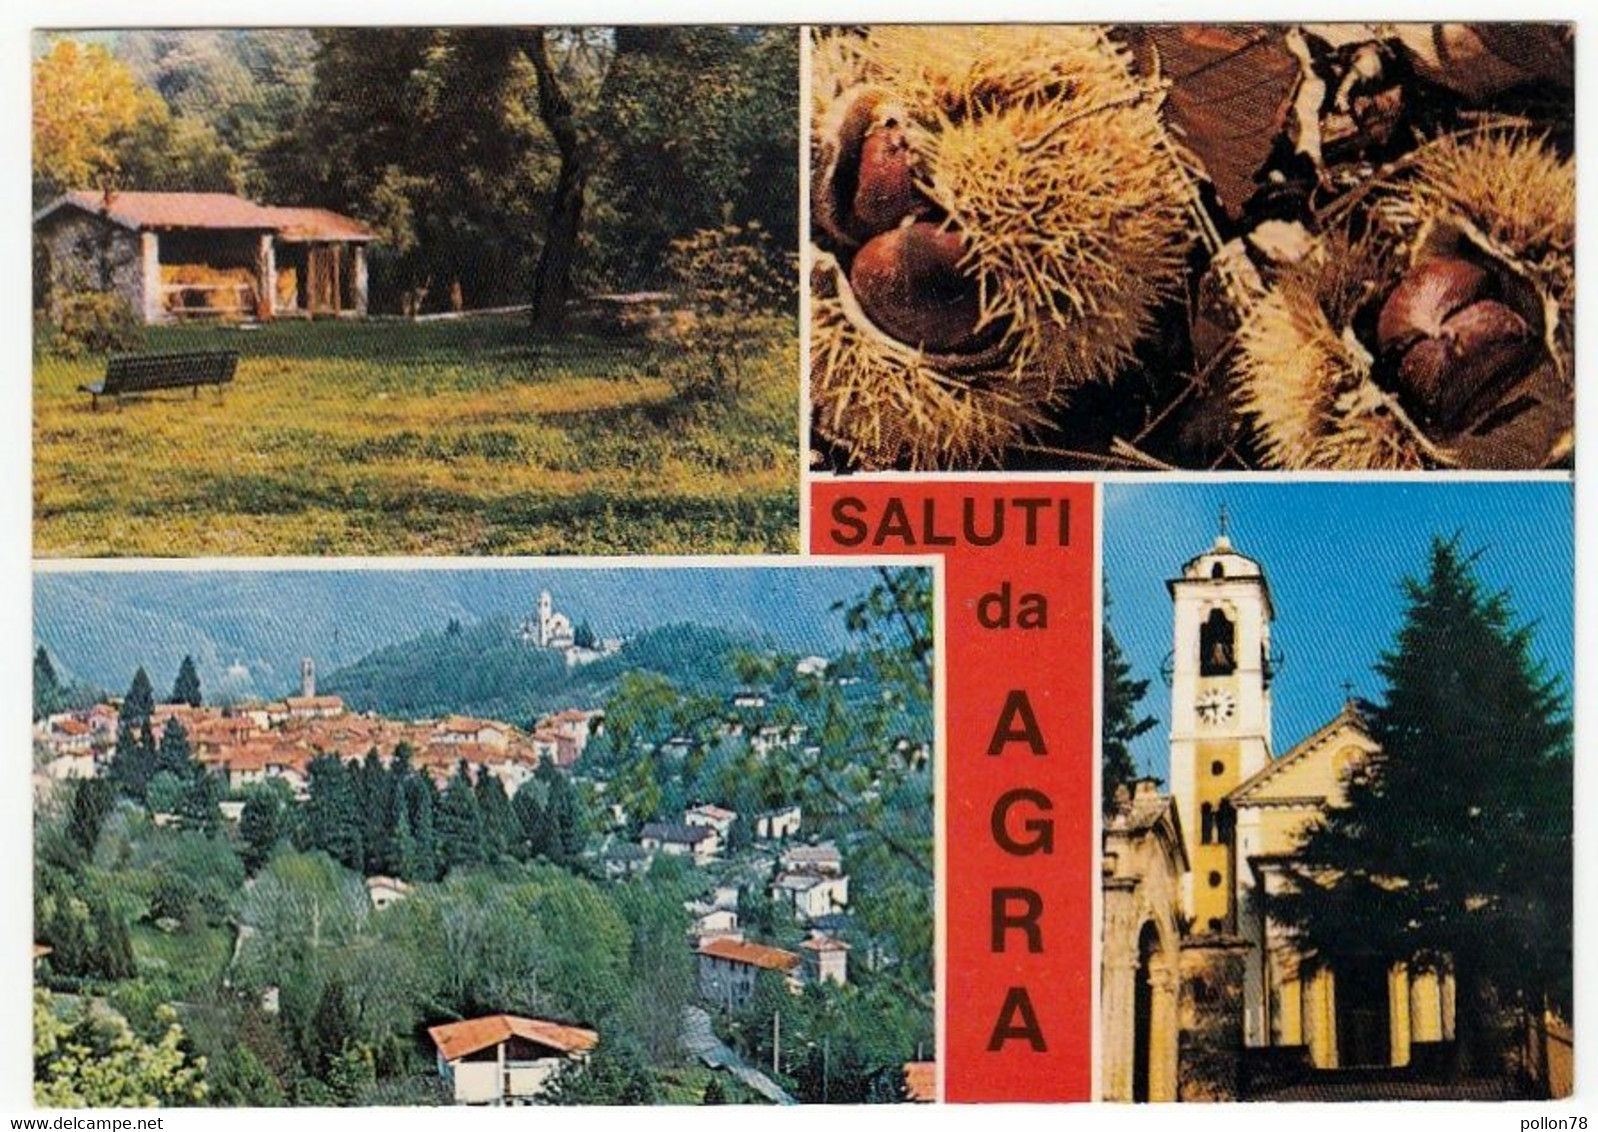 SALUTI DA AGRA - LUINO - VARESE - 1985 - VEDUTE - Luino